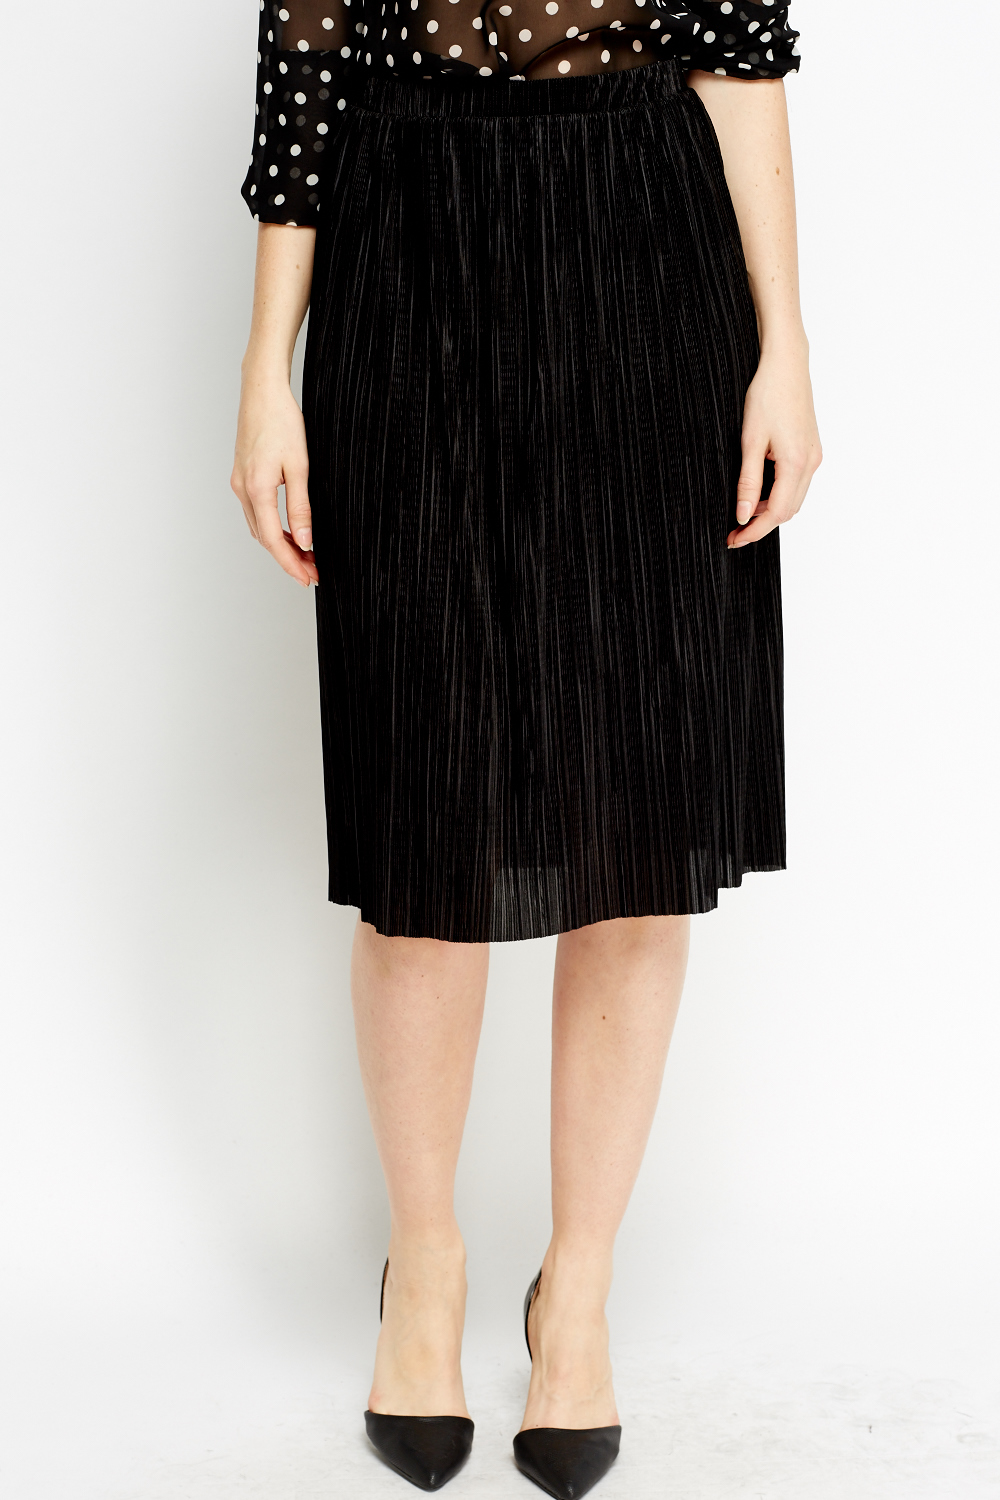 Black Pleated Midi Skirt - Just $7